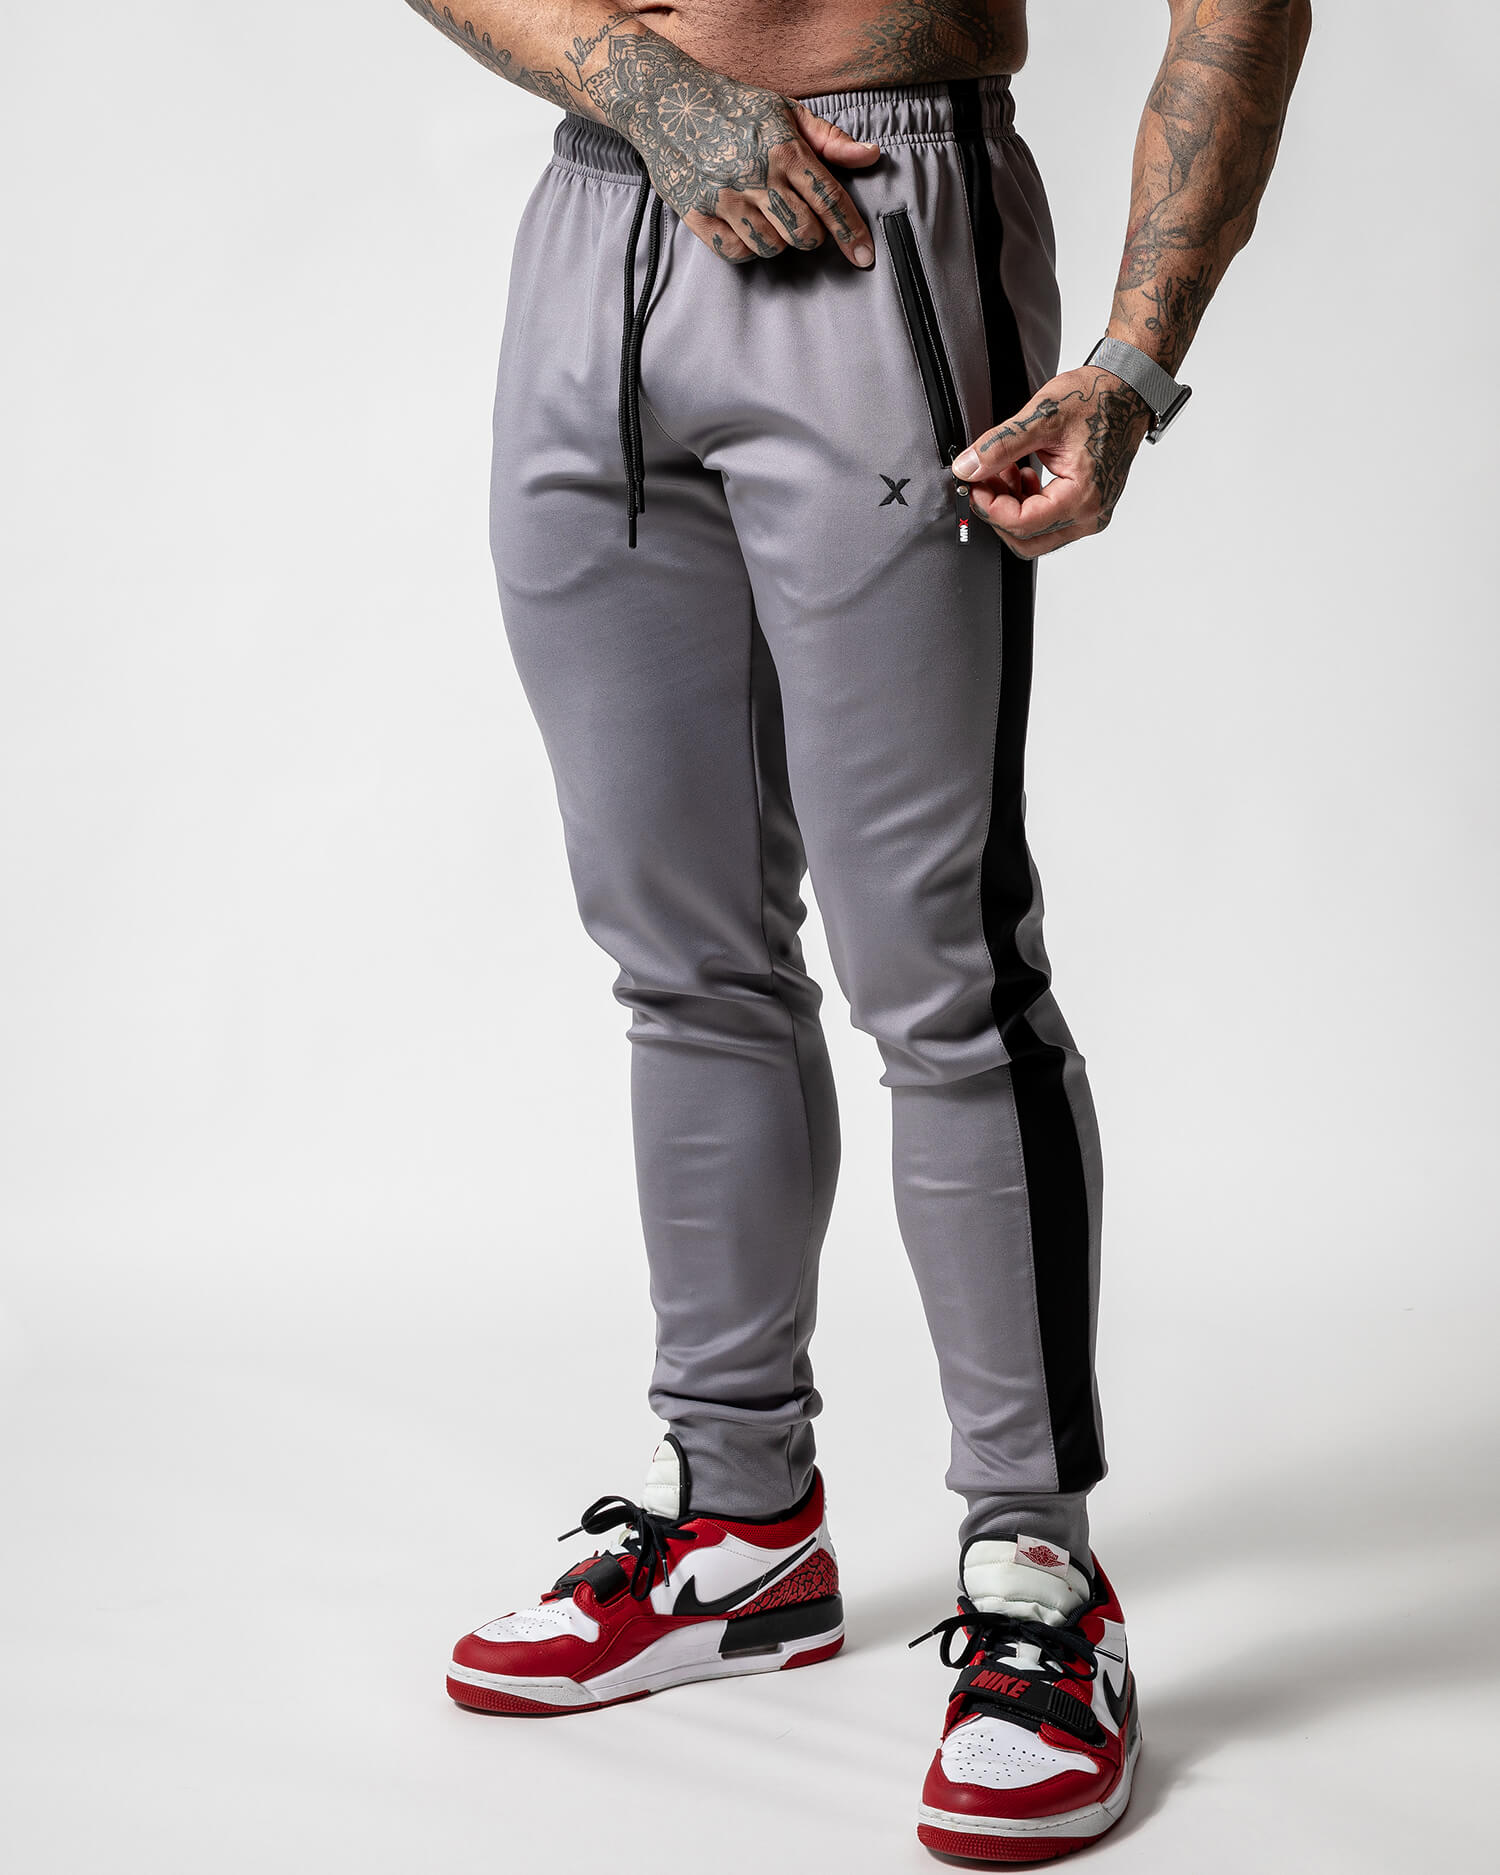 Mentex - Jogger pant gris homme fashion